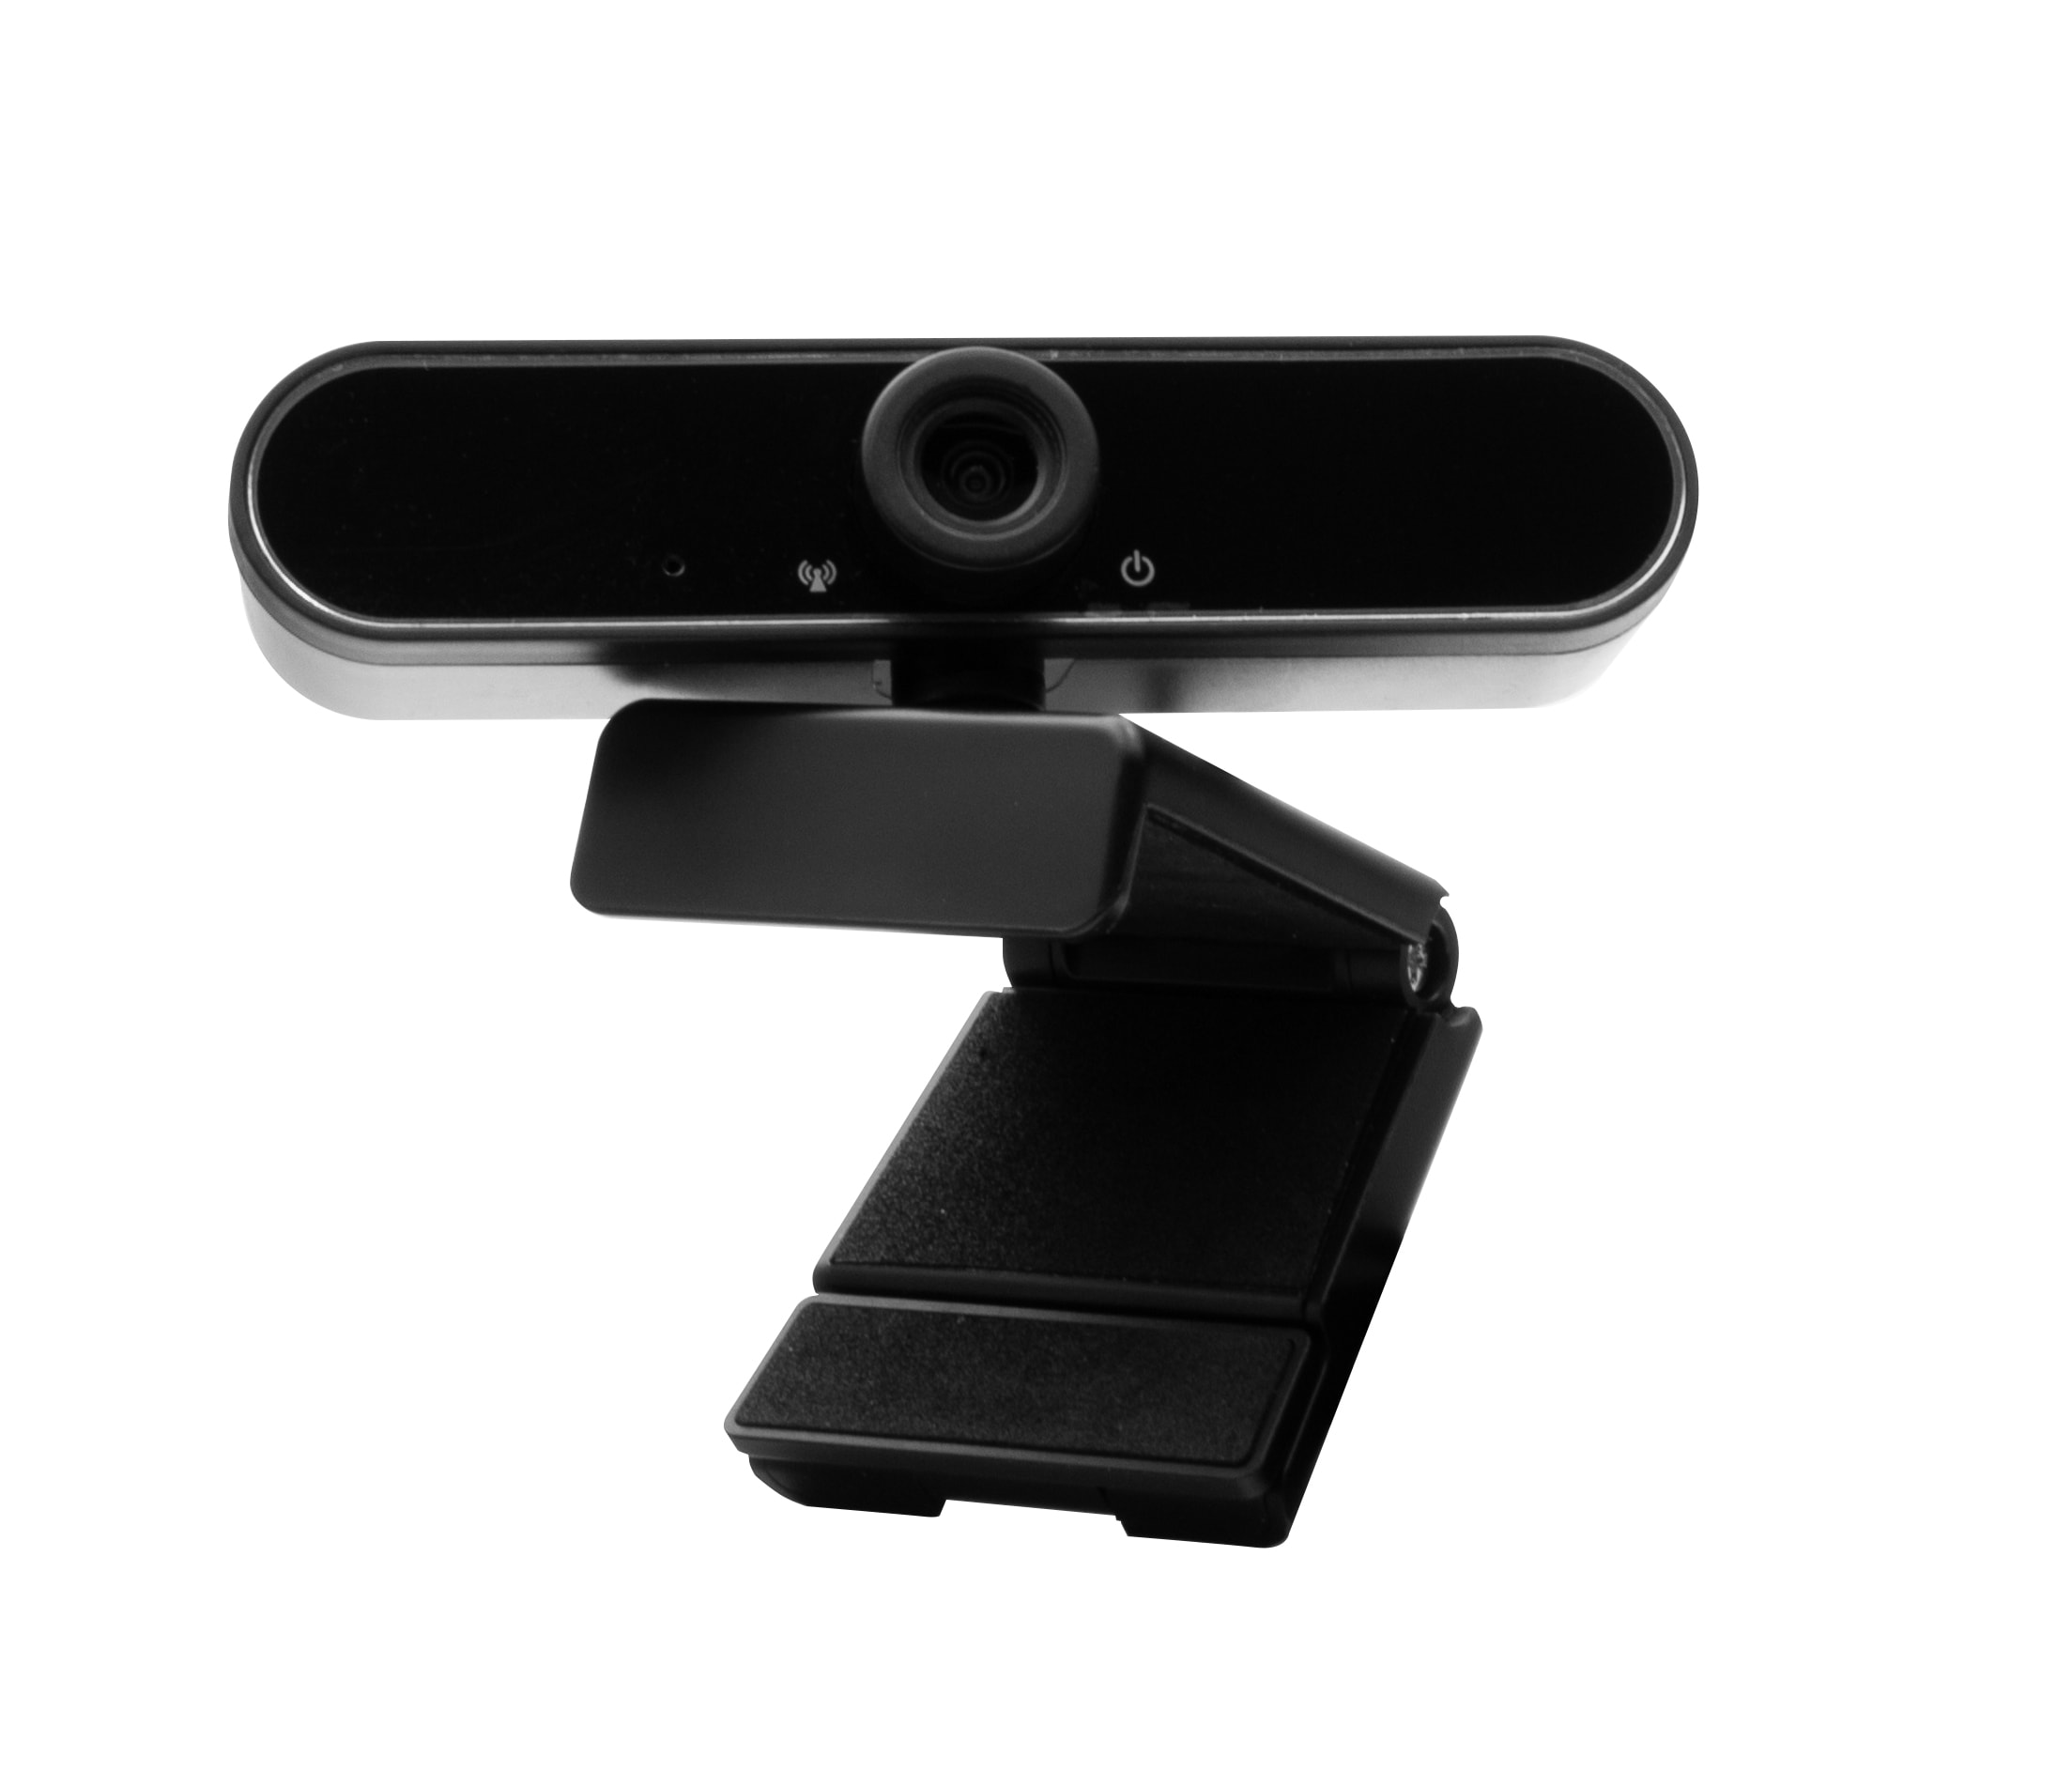 Hyrican Eingabegeräte-Set »Striker Streamer Startup Collection Headset + Studio Mikrofon + Webcam«, ST-GH530 + ST-SM50 + DW1 kabelgebunden, USB, schwarz